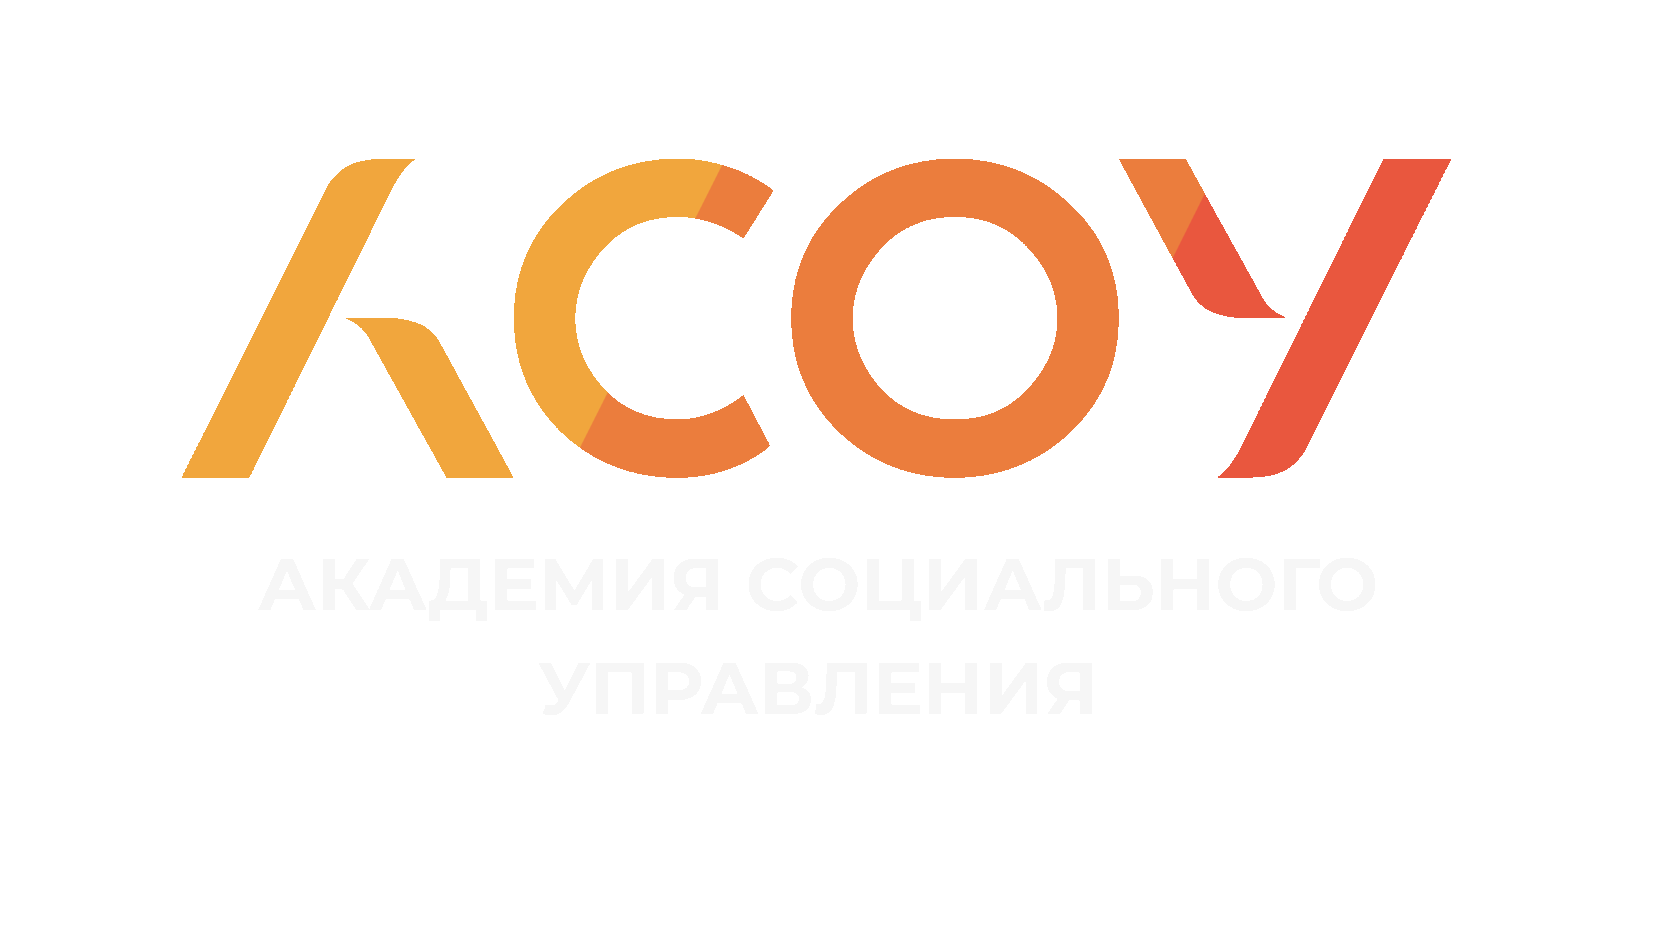  Экспресс-курсы по подготовке к ЕГЭ и ОГЭ с экспертами Московской области 